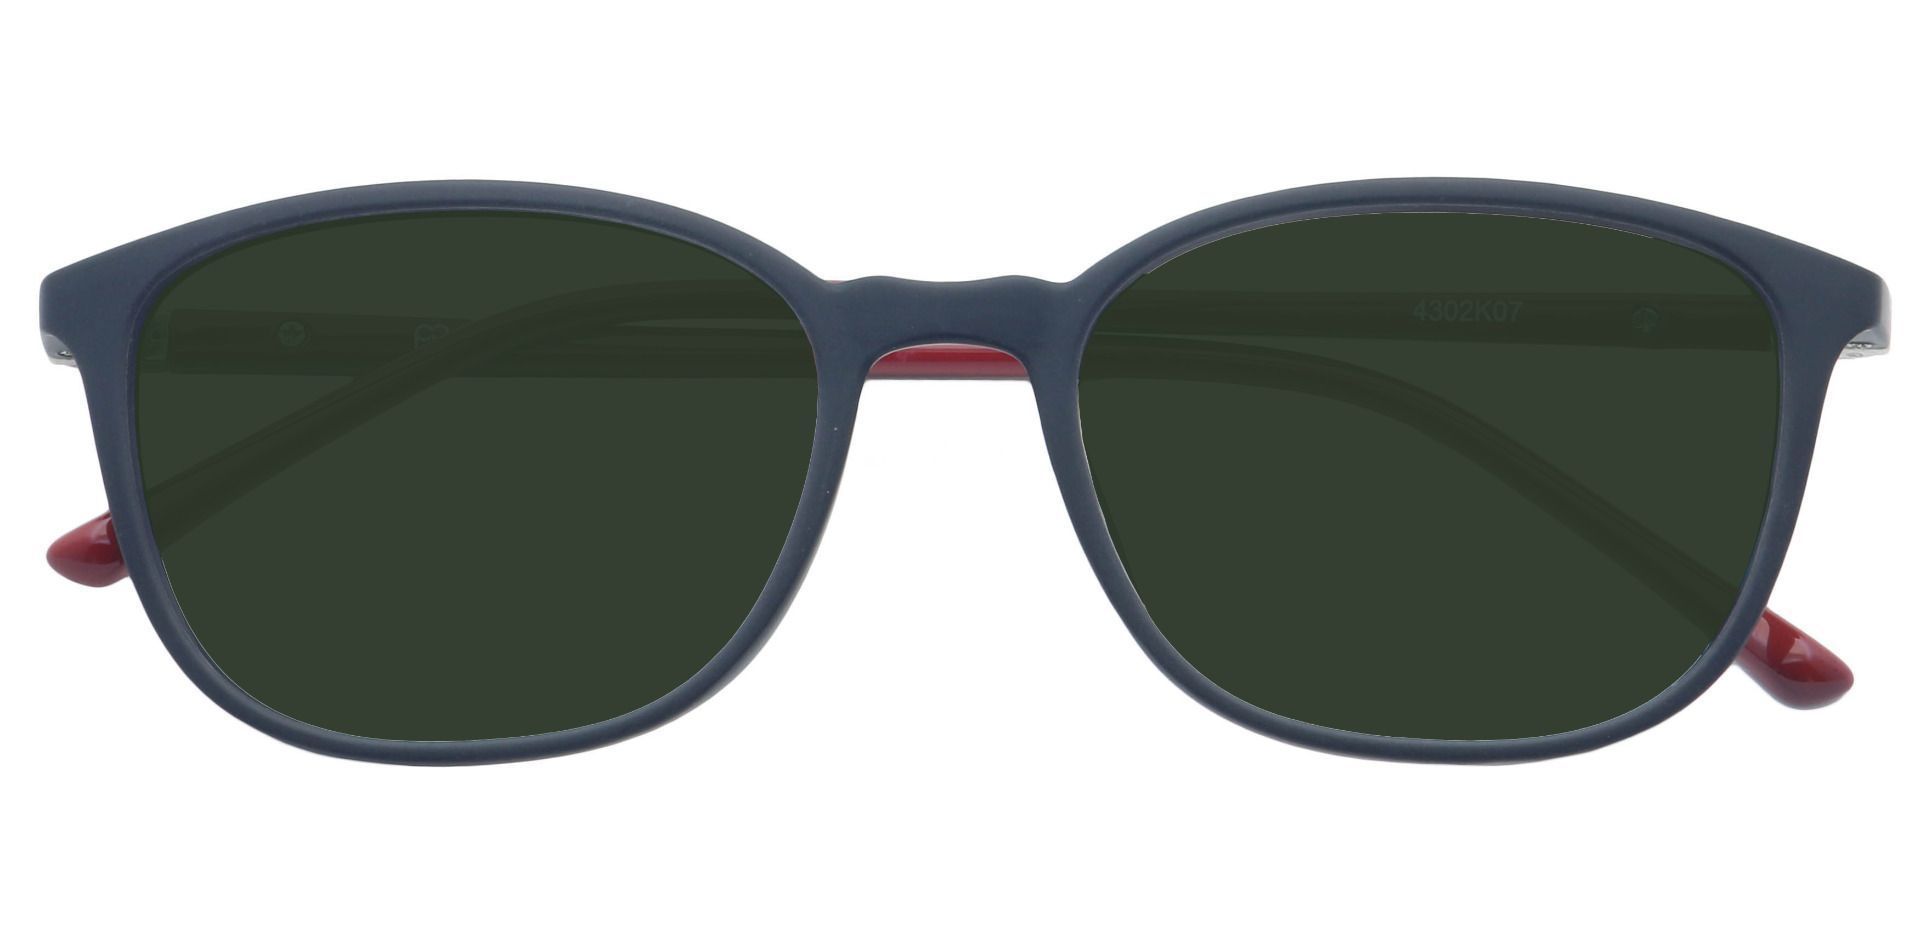 Karleen Oval Progressive Sunglasses - Black Frame With Green Lenses